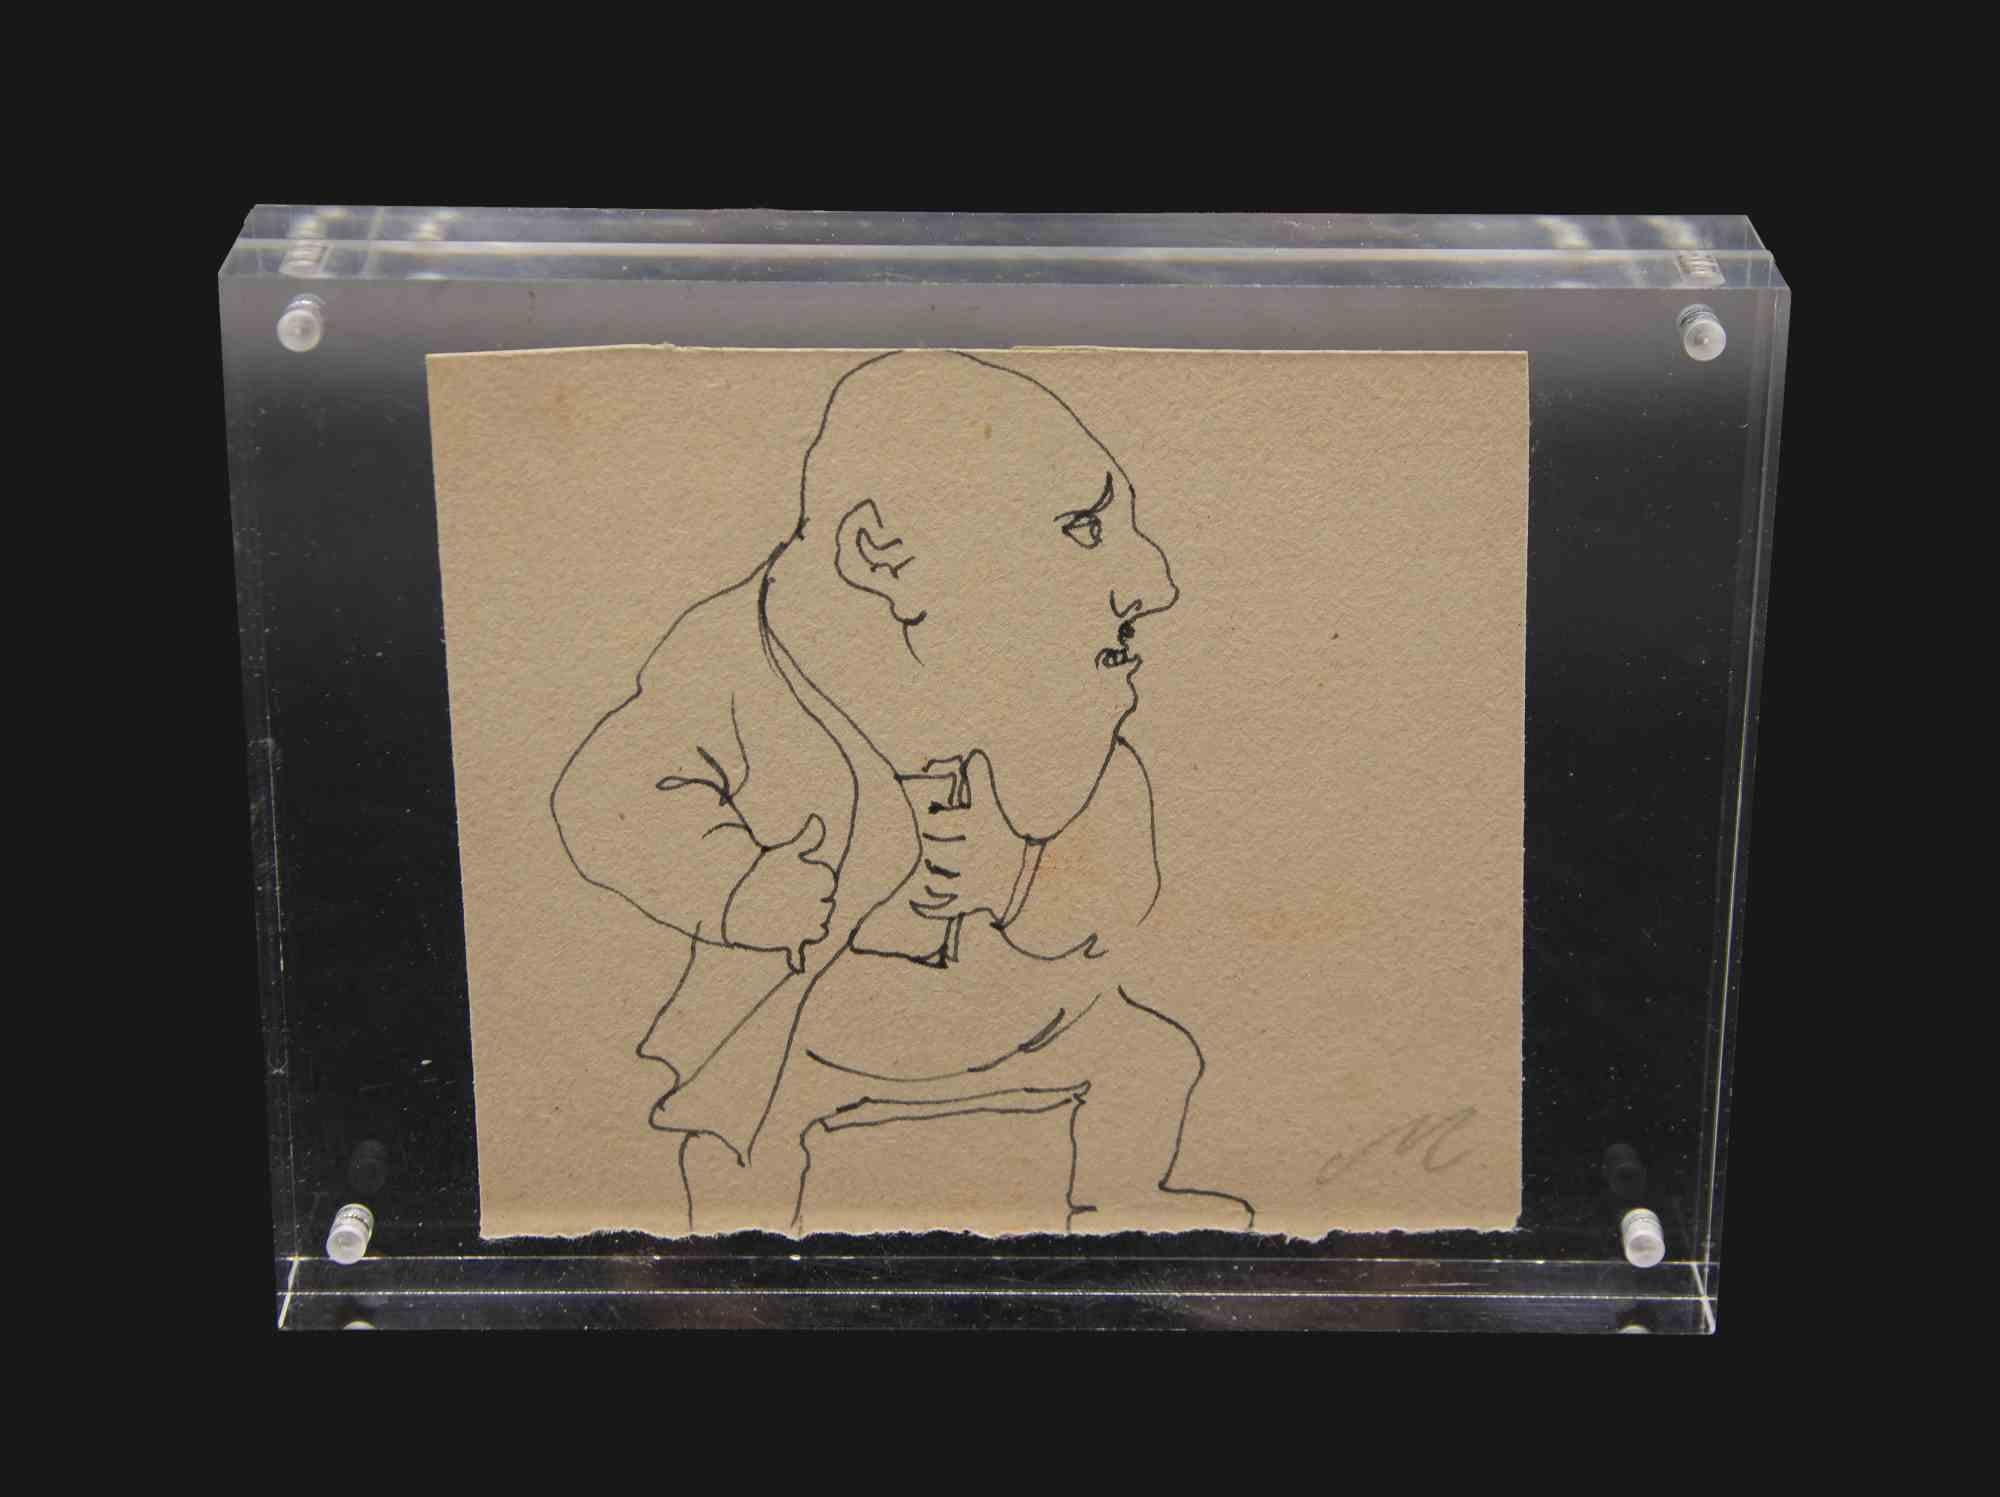 Der Kapitalist ist ein Kunstwerk von Mino Maccari aus den 1960er Jahren. 

Federzeichnung mit Monogramm des Künstlers darunter.

9x11 cm; 11 x 15 cm mit Plexiglasrahmen. 

Guter Zustand.

 

Mino Maccari wurde 1898 in Siena geboren. Der